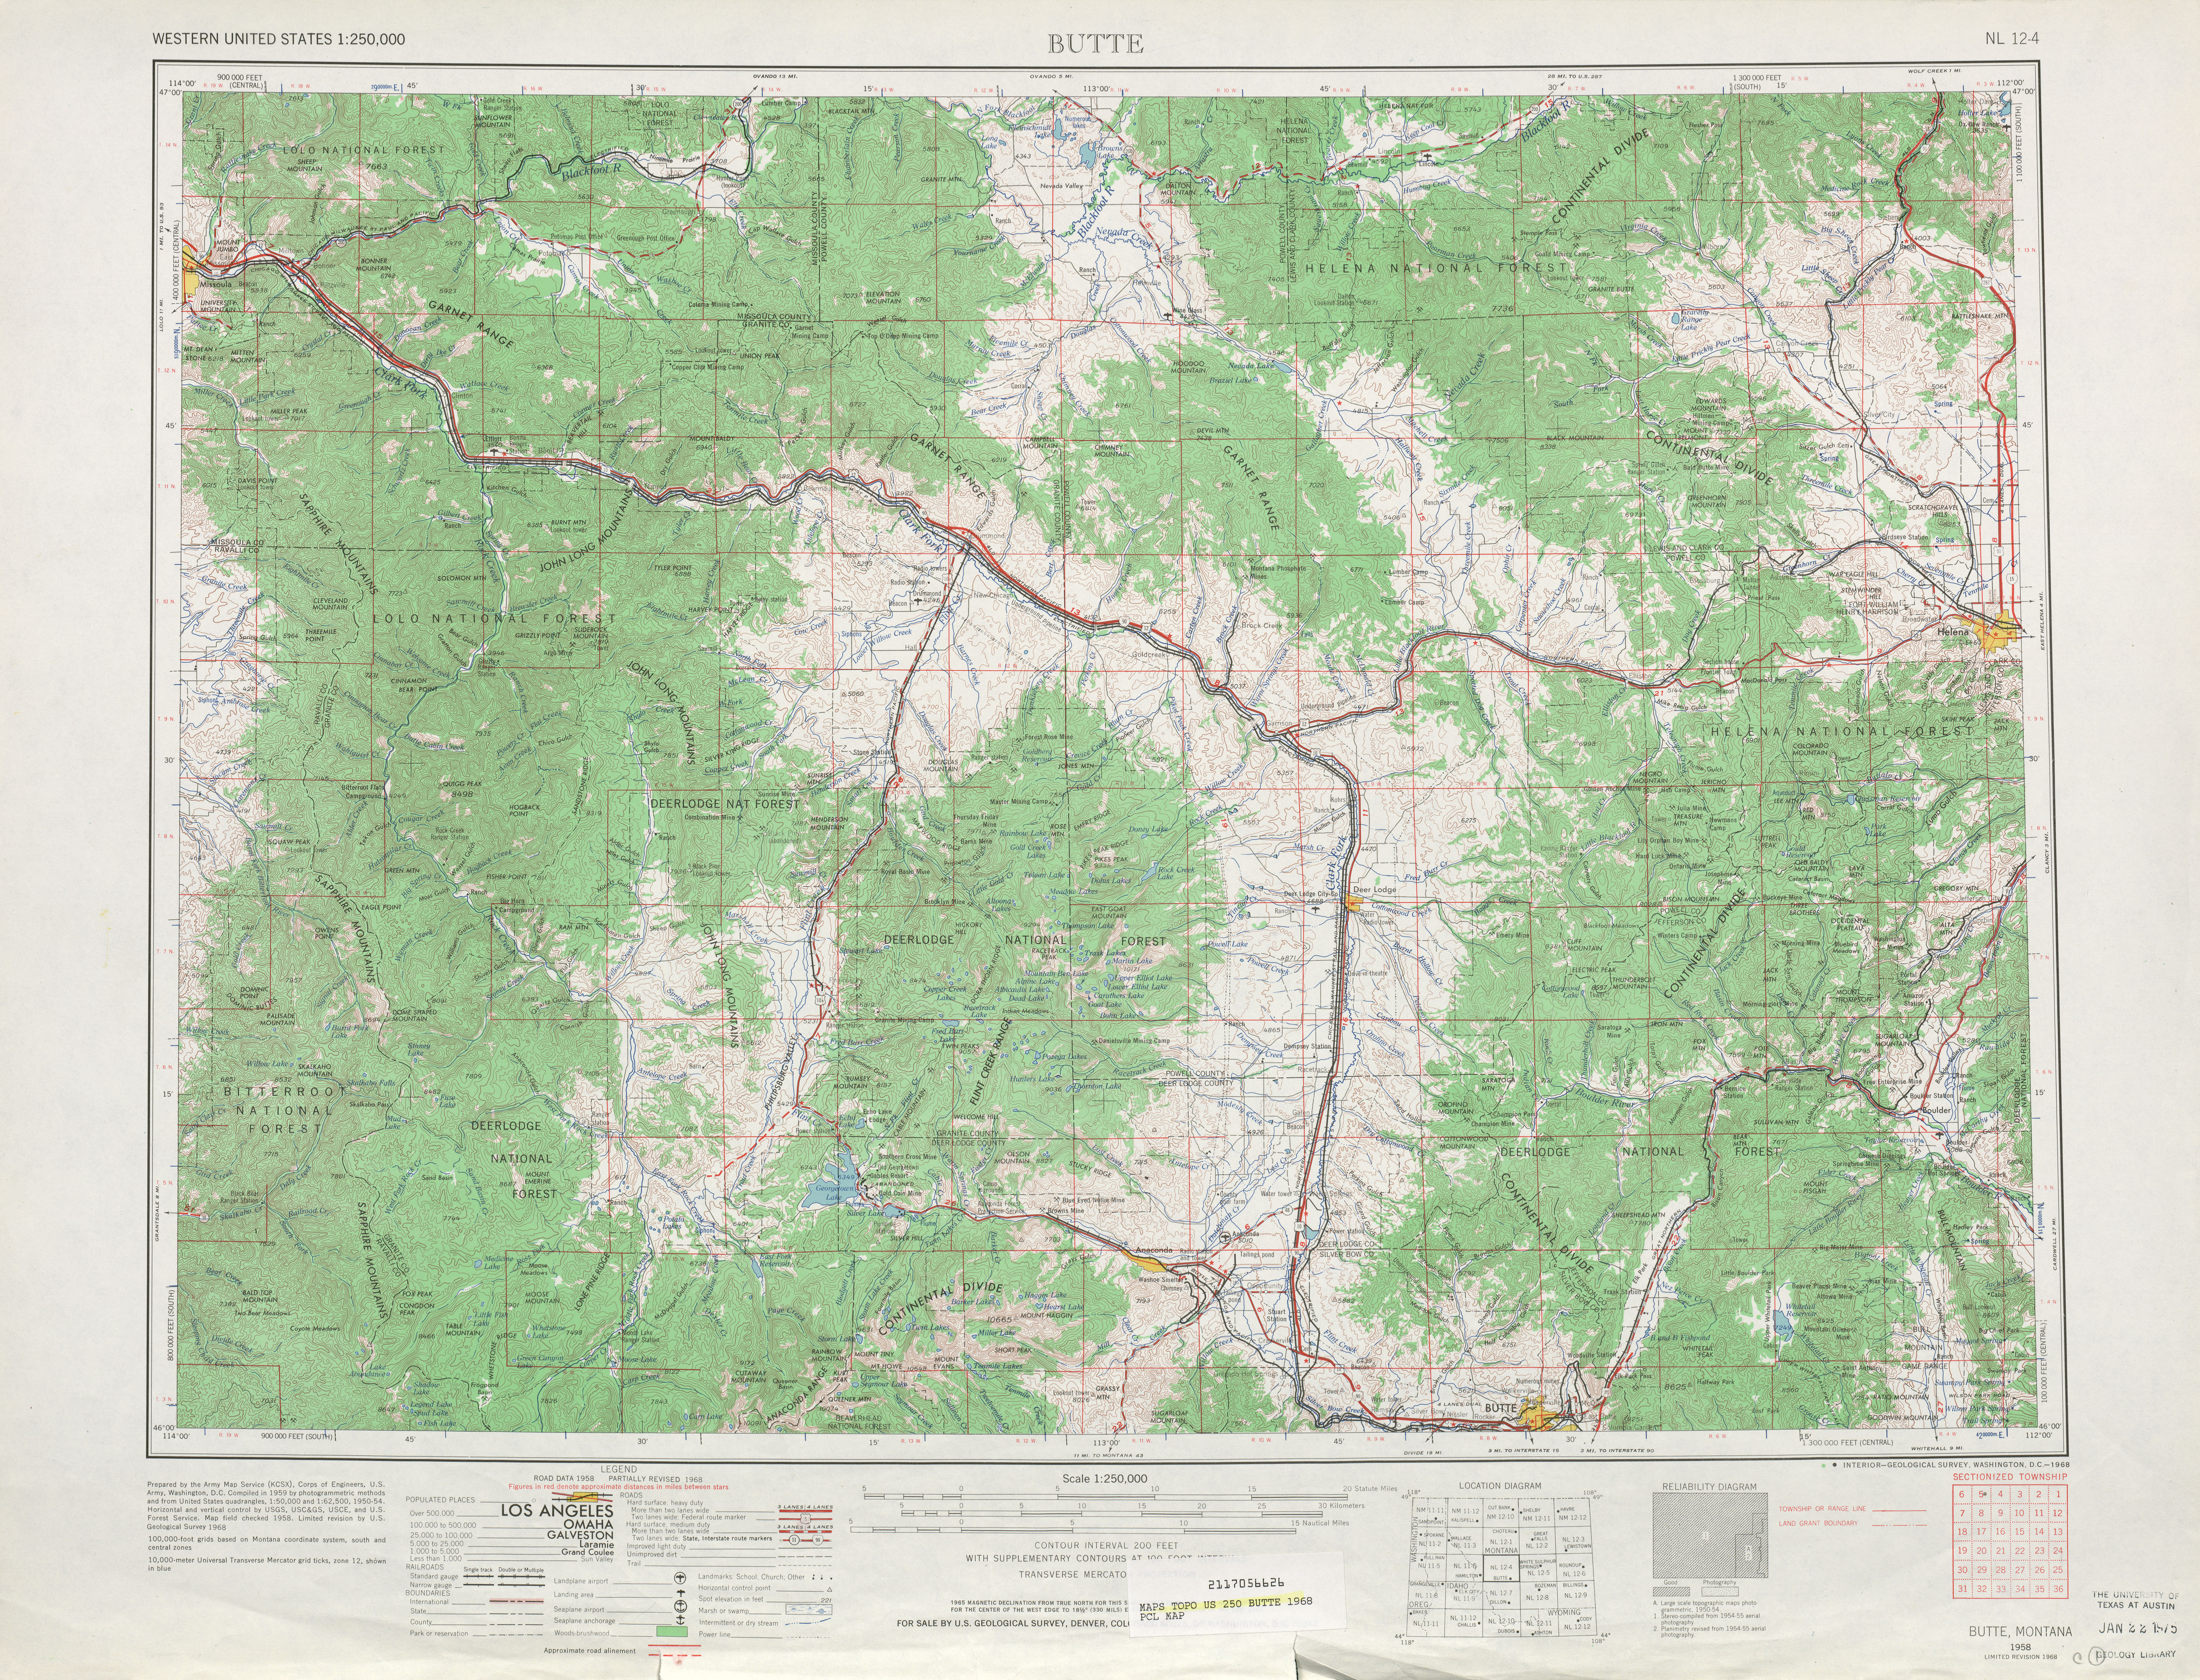 Hoja Butte del Mapa Topográfico de los Estados Unidos 1968